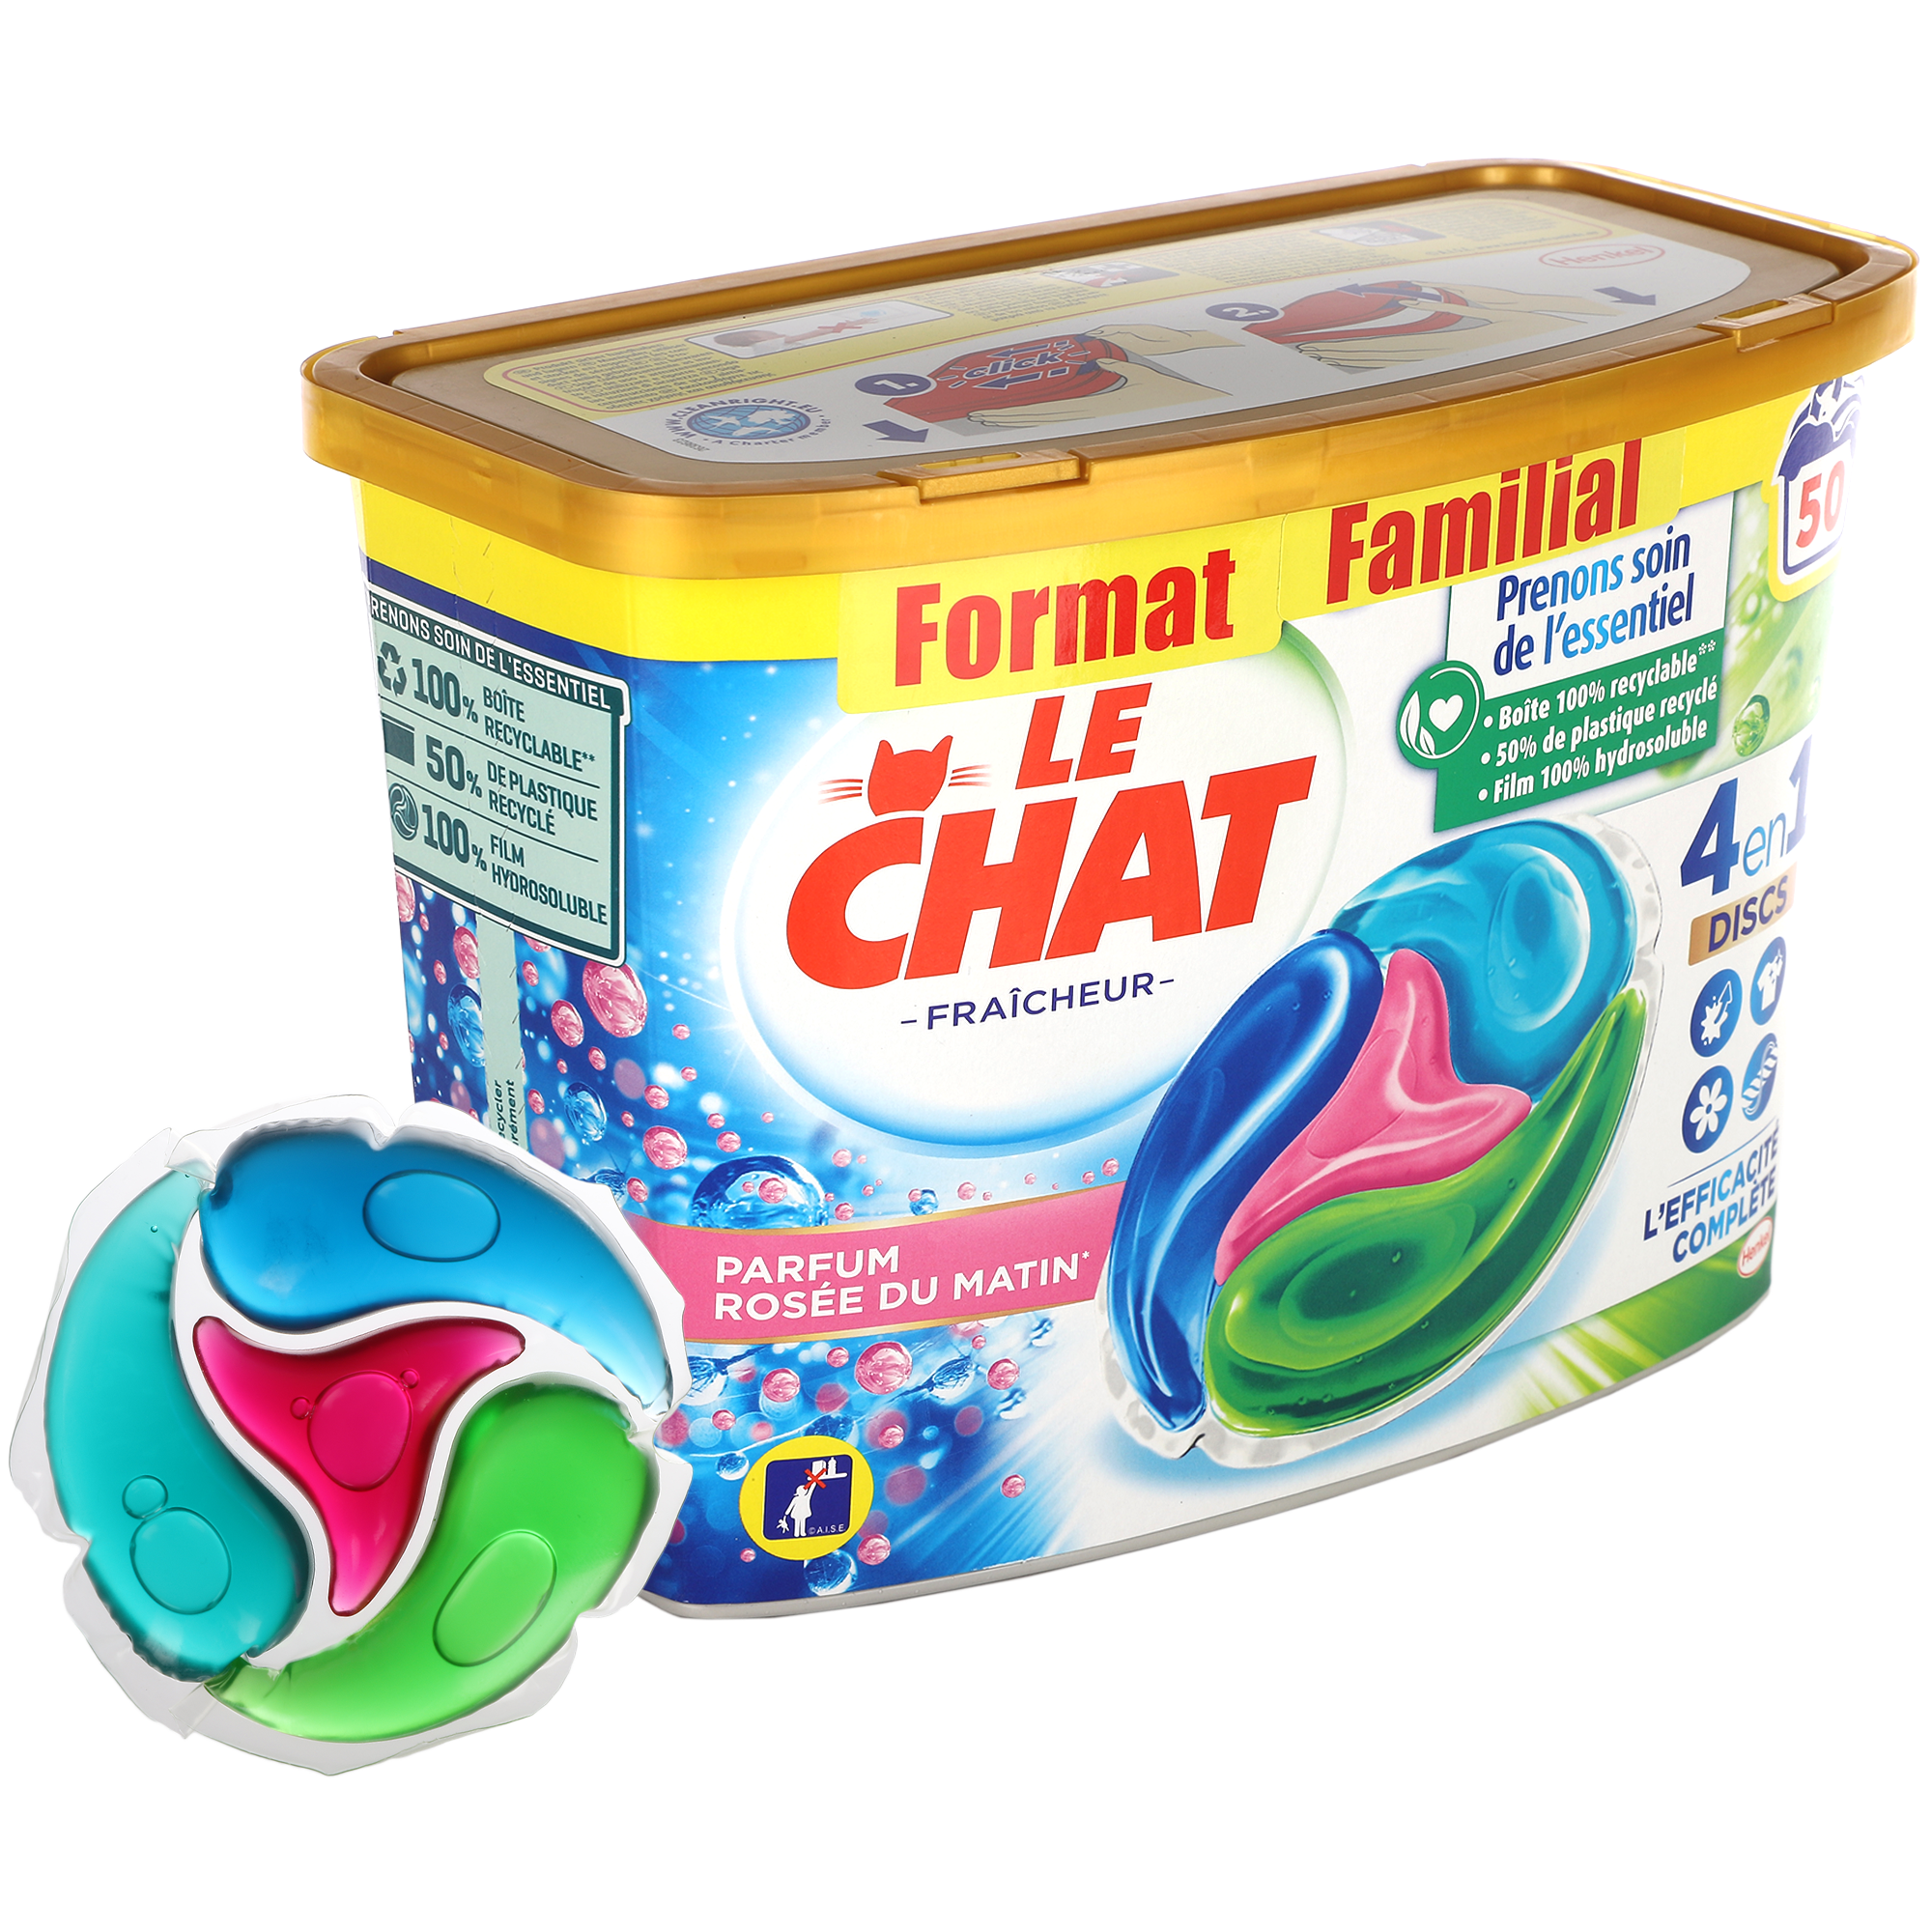 Promo Le chat lessive capsules format familial(d) chez Carrefour Market